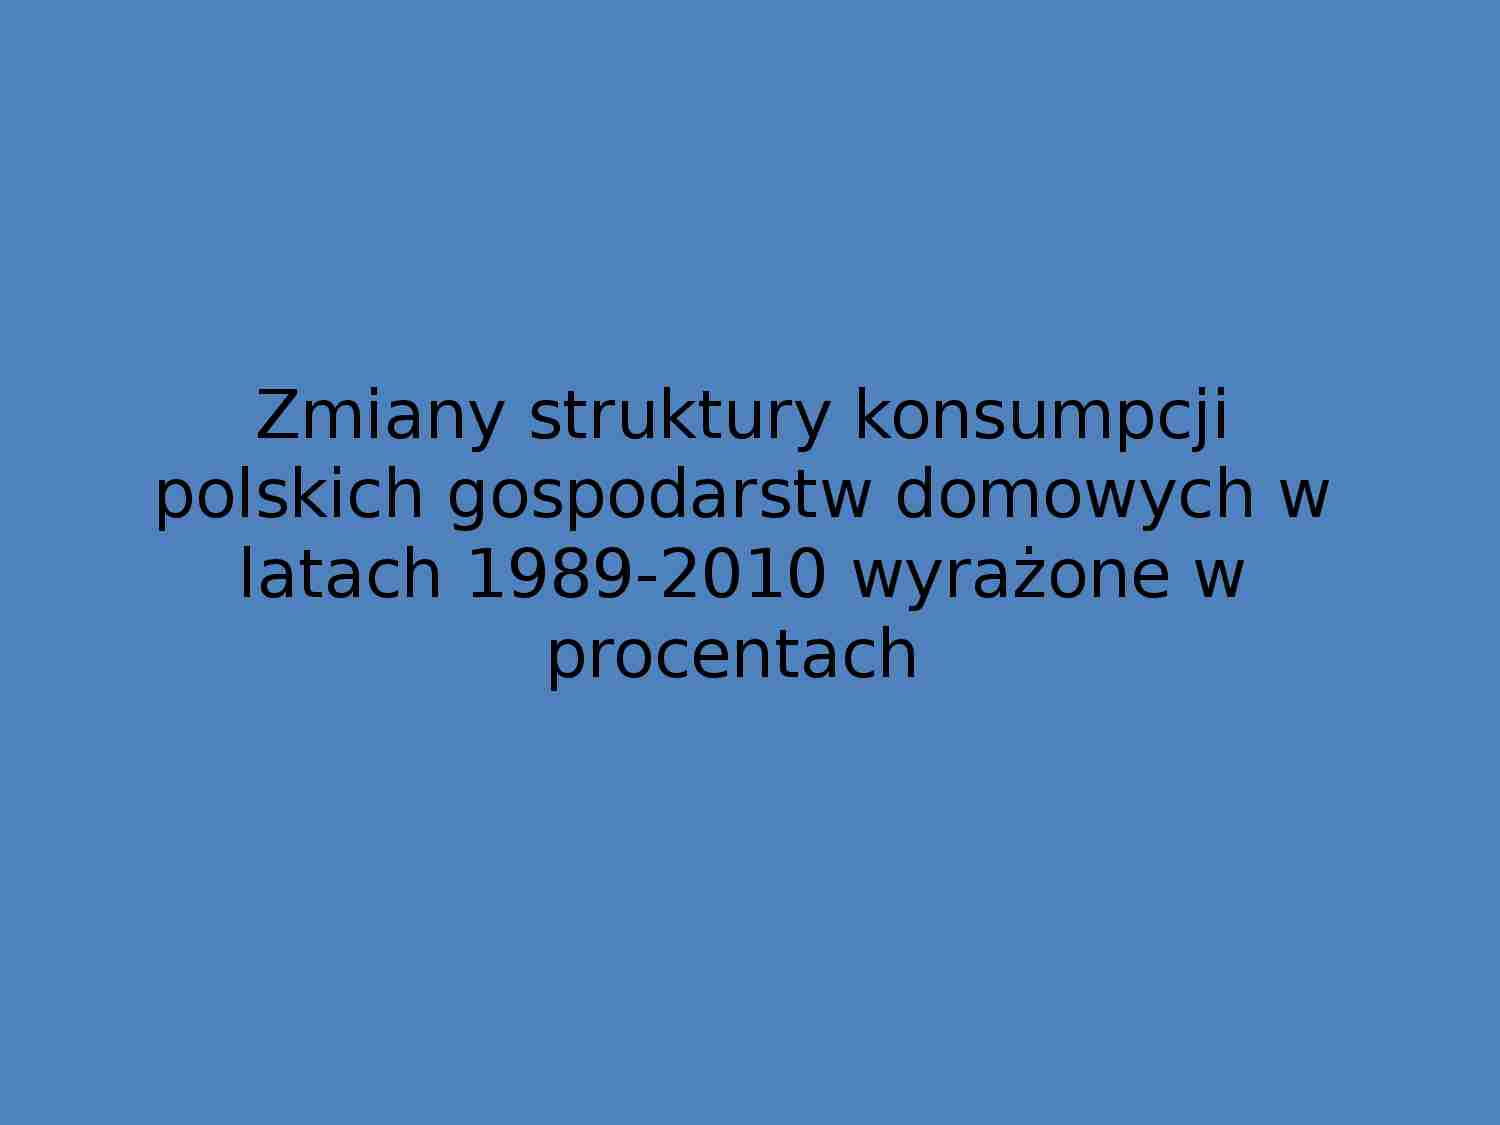 Zmiana konsumpcji polskich gospodarstw domowych - strona 1